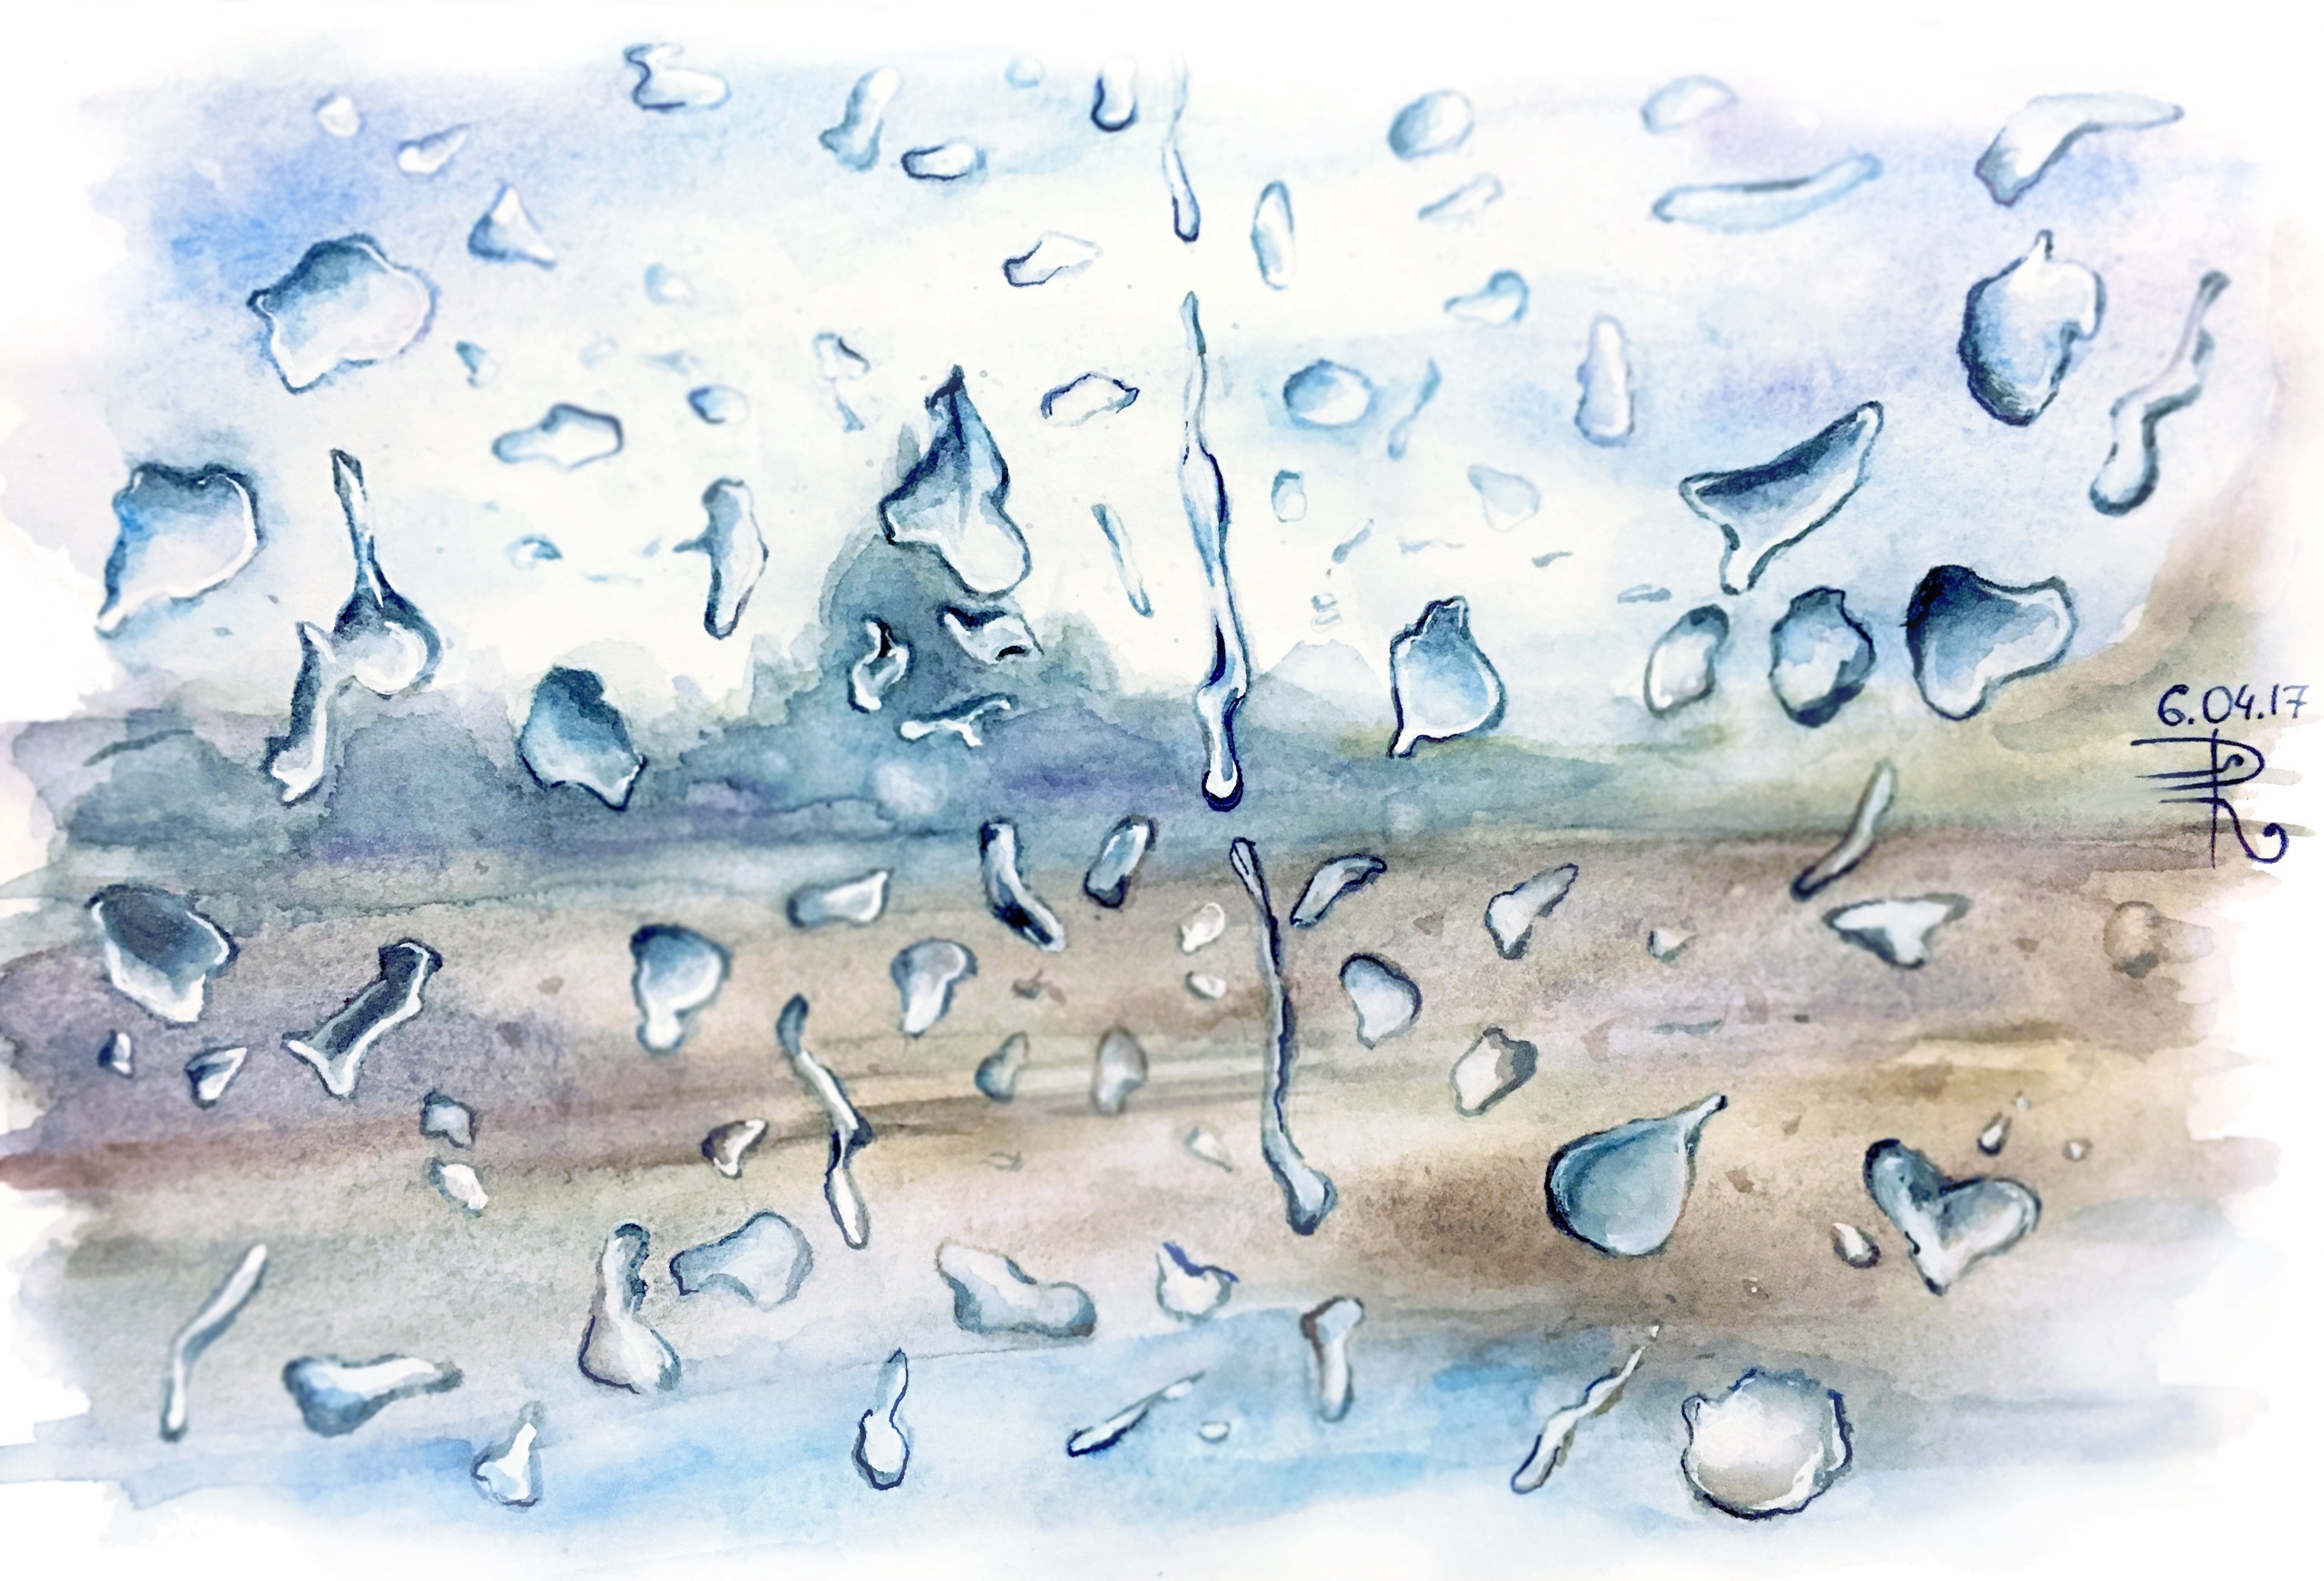 Дождик дождик дождик капельки. Капли на стекле акварелью. Дождь рисунок. Капли дождя акварель. Капли дождя на стекле акварелью.